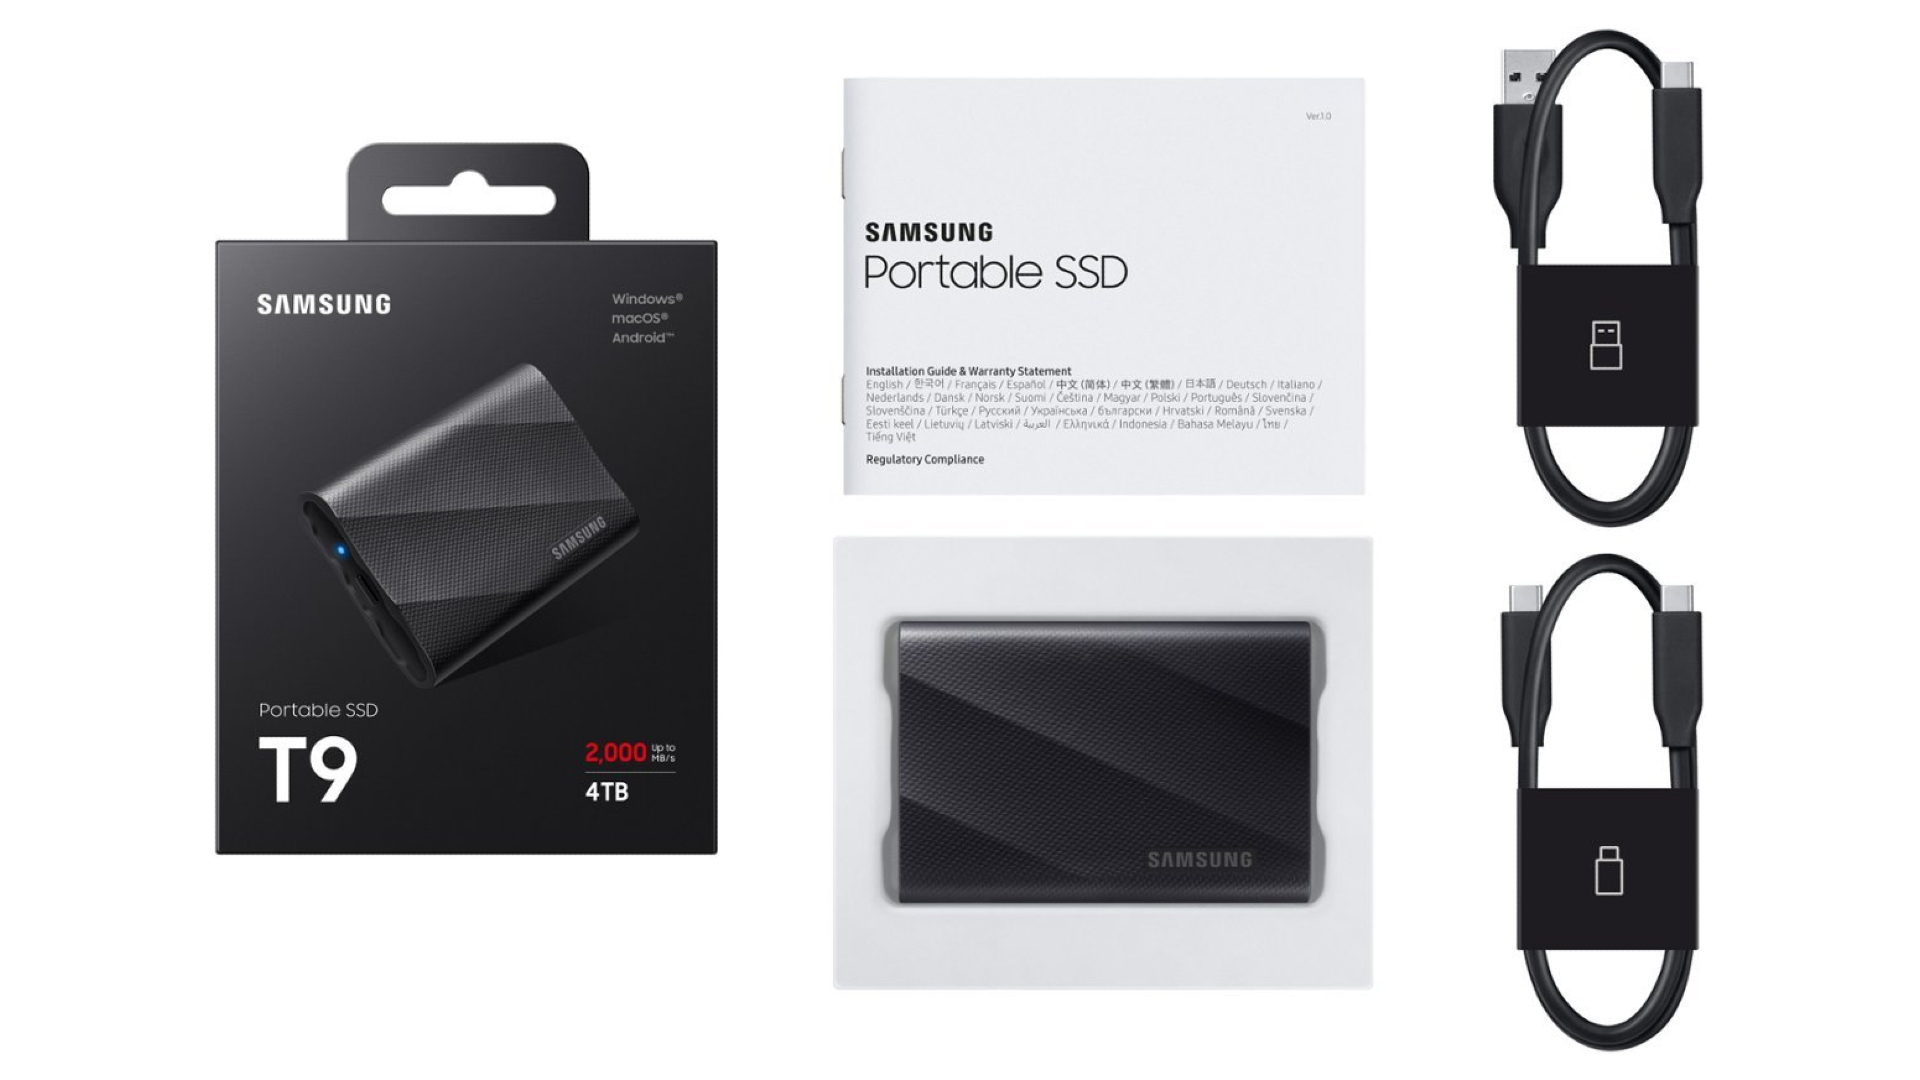 Bild der tragbaren SSD Samsung T9.